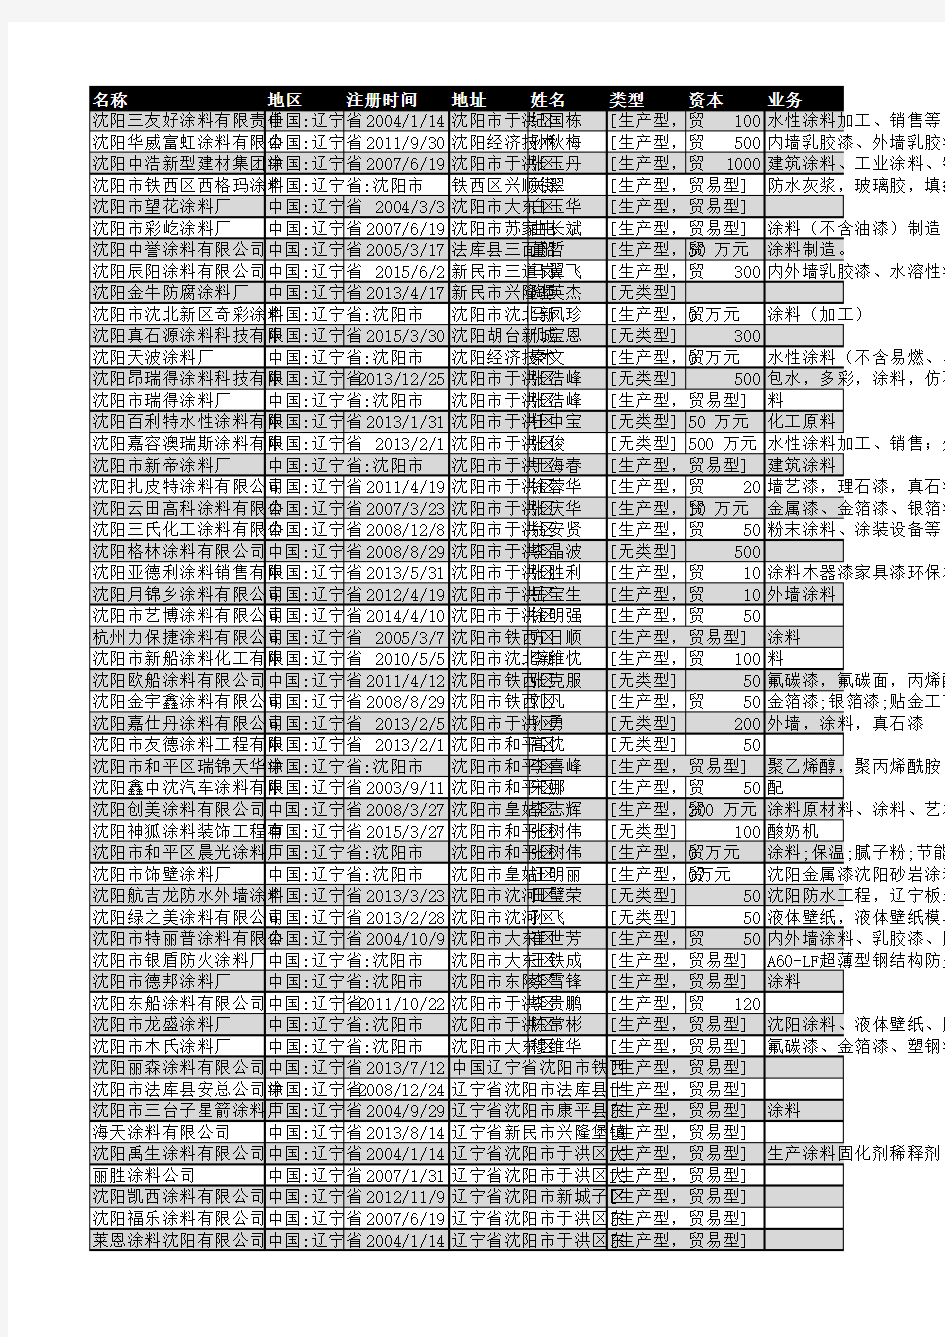 2018年沈阳市涂料行业企业名录628家